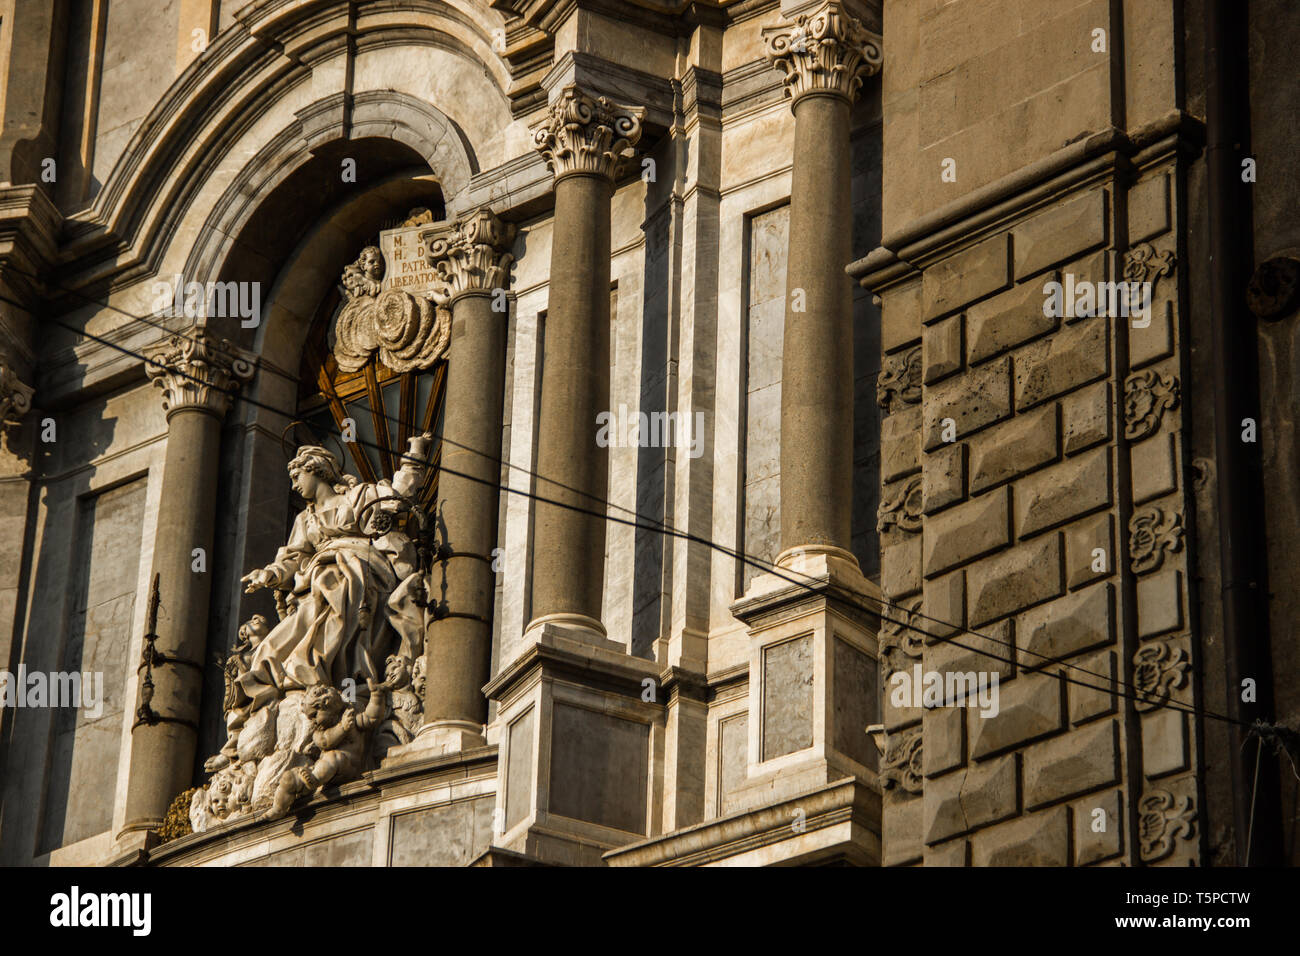 Die Kathedrale von Catania Detail der Fassade mit Statue und barocken Architektur Stockfoto